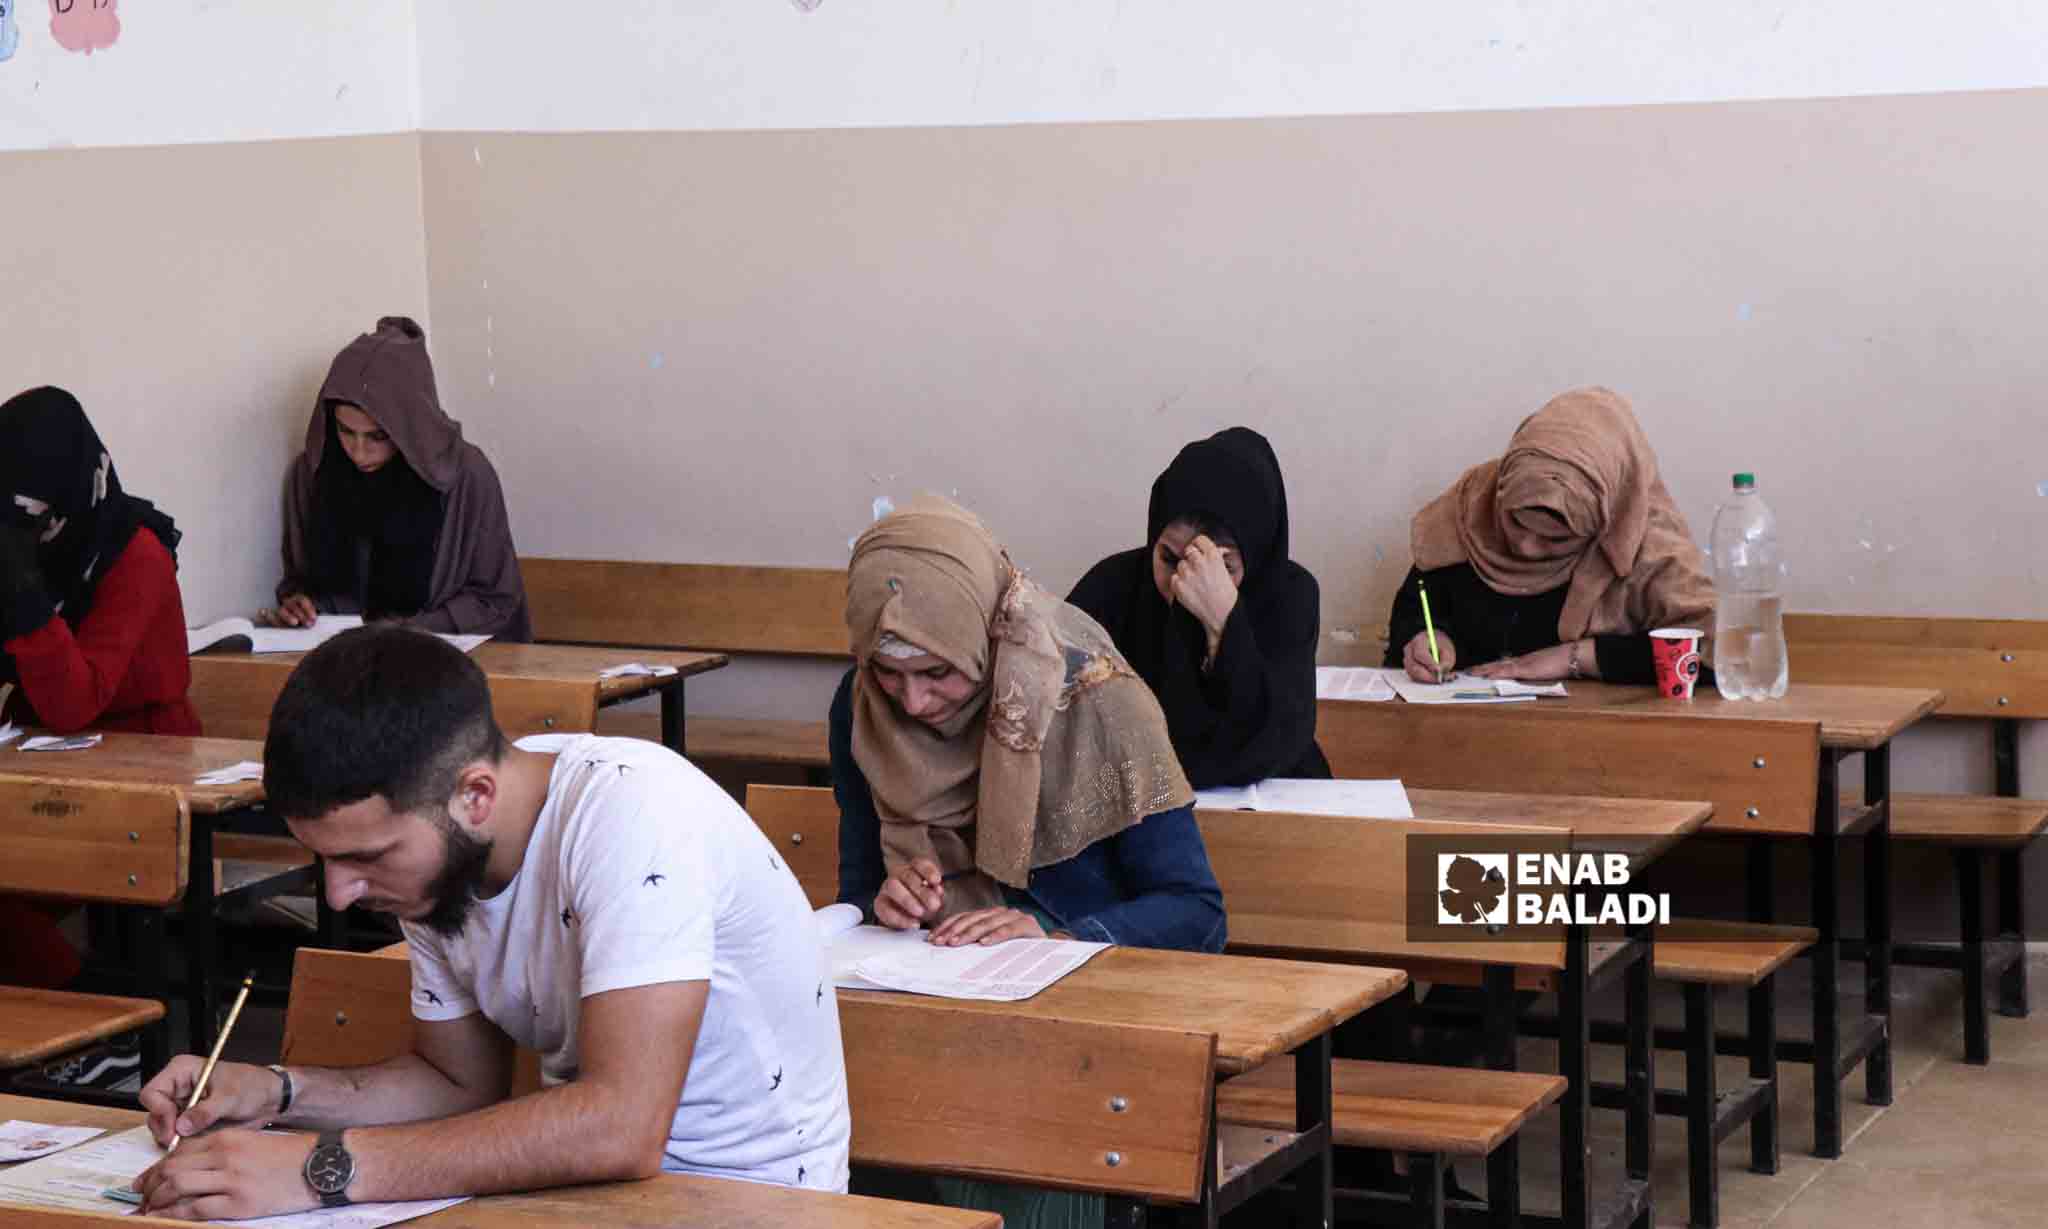 طلاب الشهادة الثانوية يدخلون مدرسة سالم المرعي لأداء امتحانات الشهادة الثانوية - 5 من تموز 2023 (/ حسين شعبو)